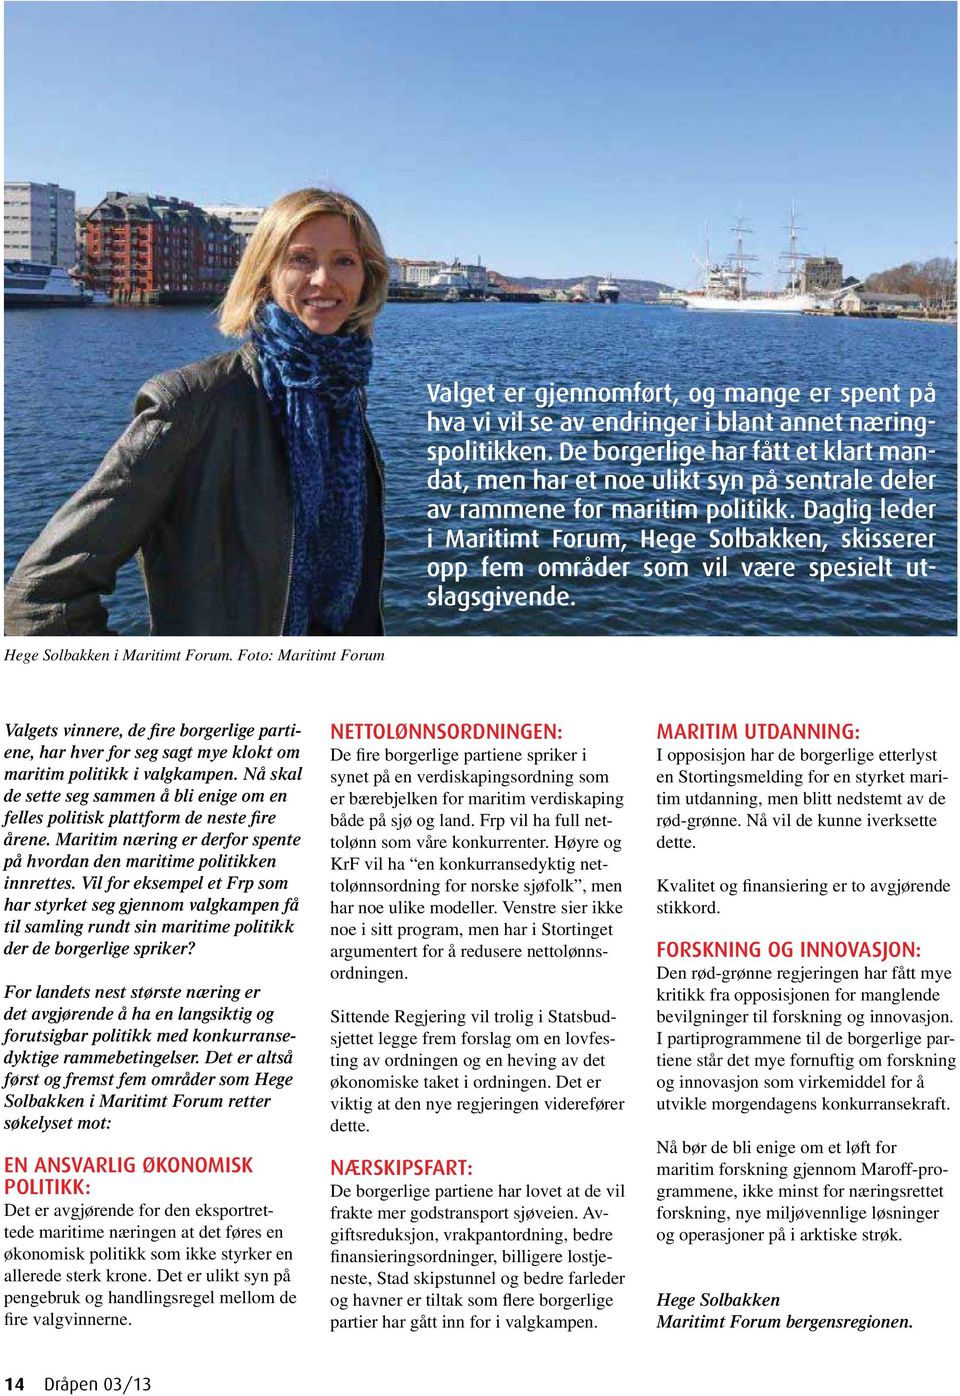 Daglig leder i Maritimt Forum, Hege Solbakken, skisserer opp fem områder som vil være spesielt utslagsgivende. Hege Solbakken i Maritimt Forum.